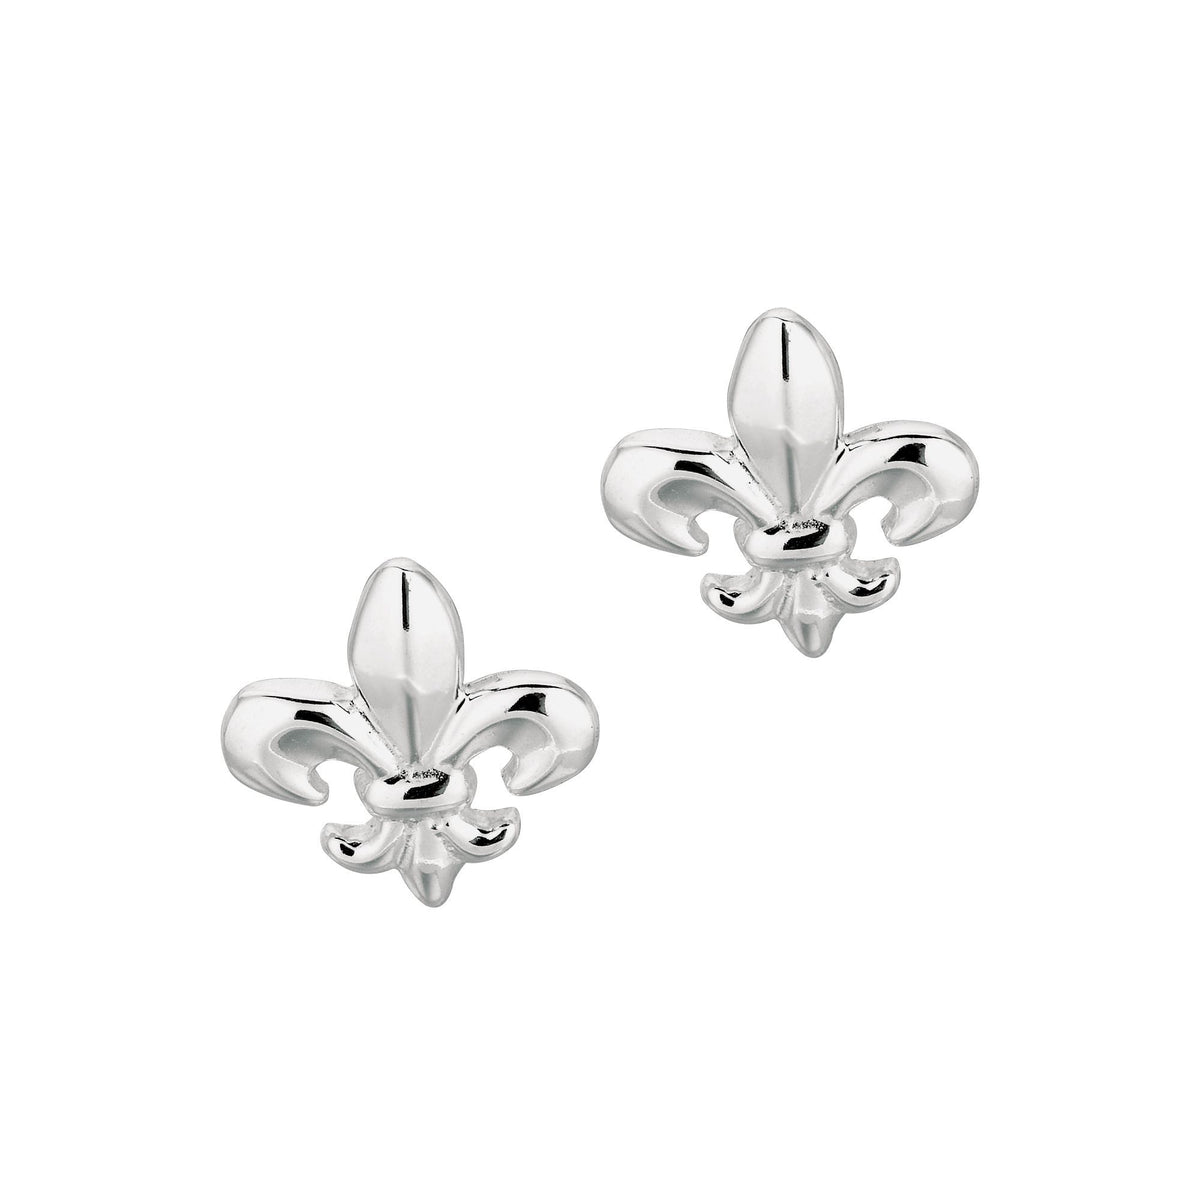 Sterling Silver Fleur De Lis Stud Earrings fine designer jewelry for men and women